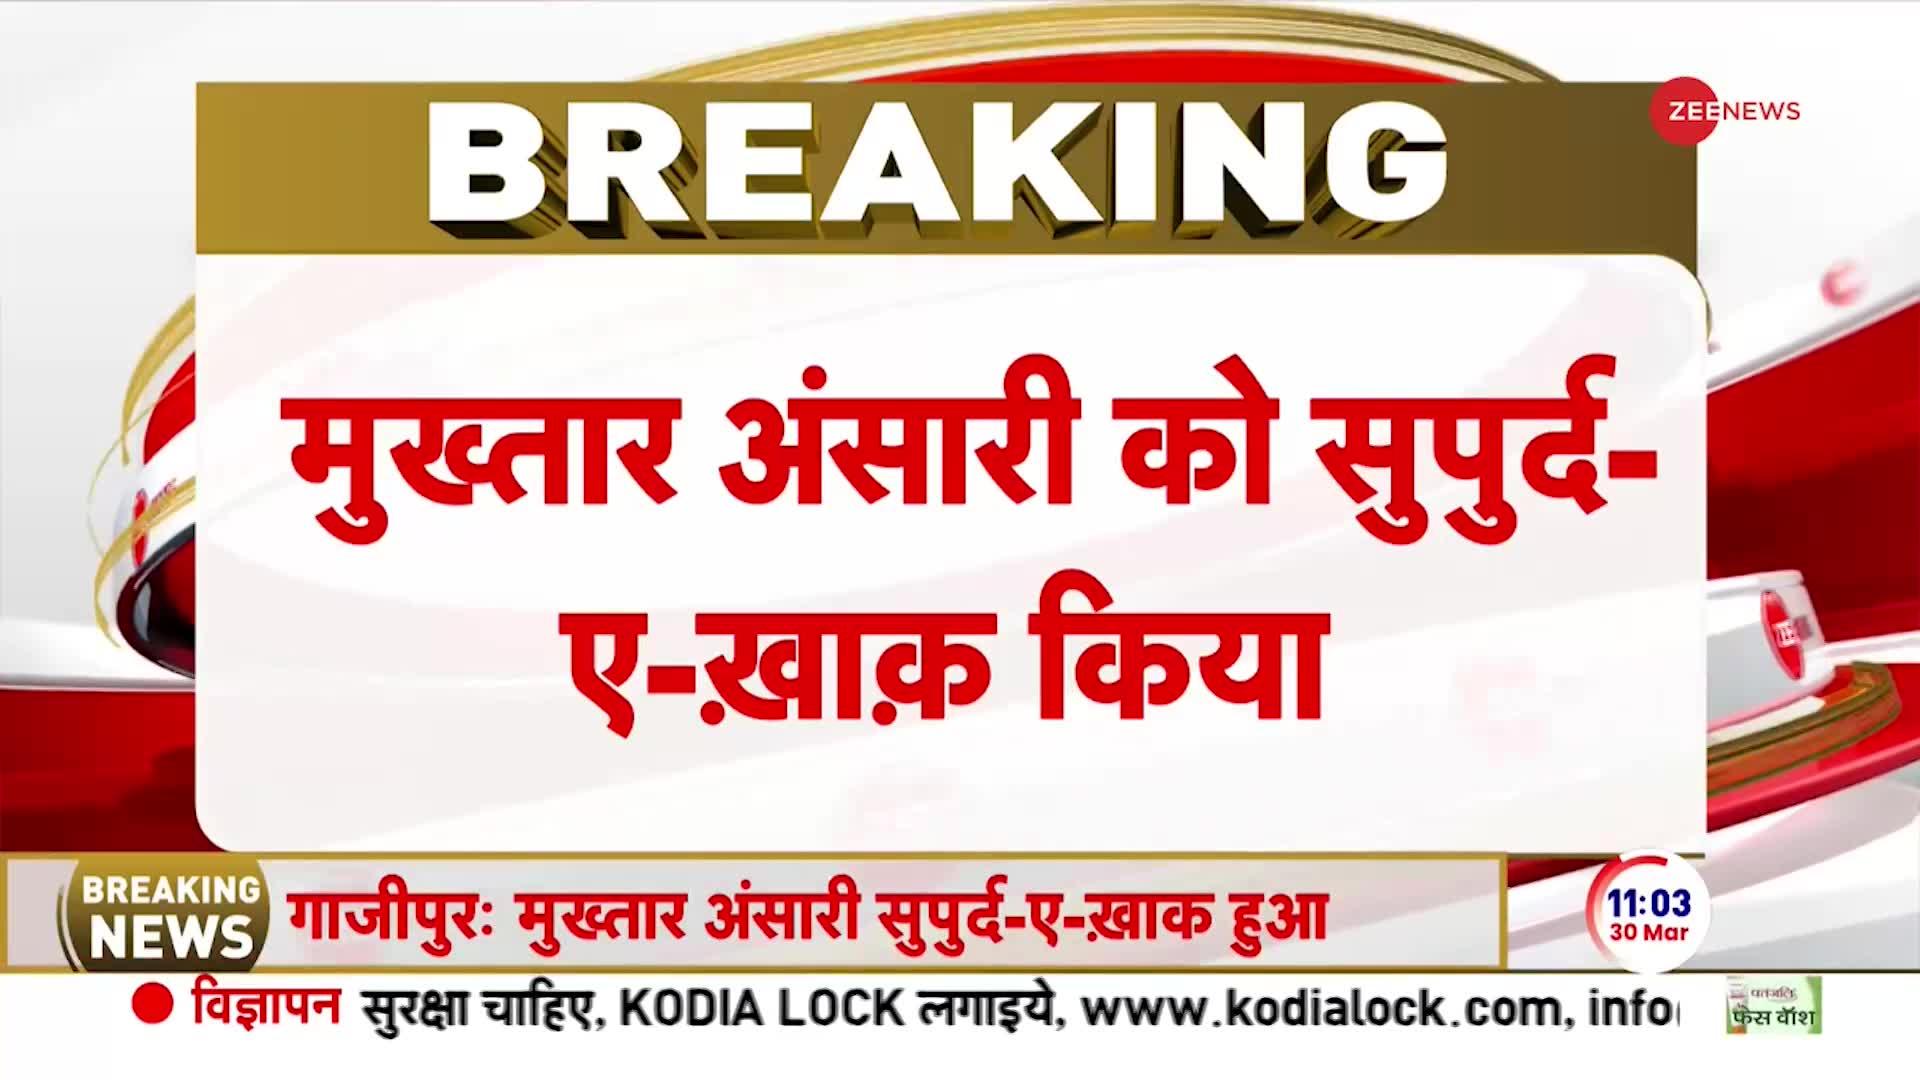 Mukhtar Ansari Last Rites Update: माफिया मुख्तार अंसारी को सुपुर्द-ए-खाक कर दिया गया